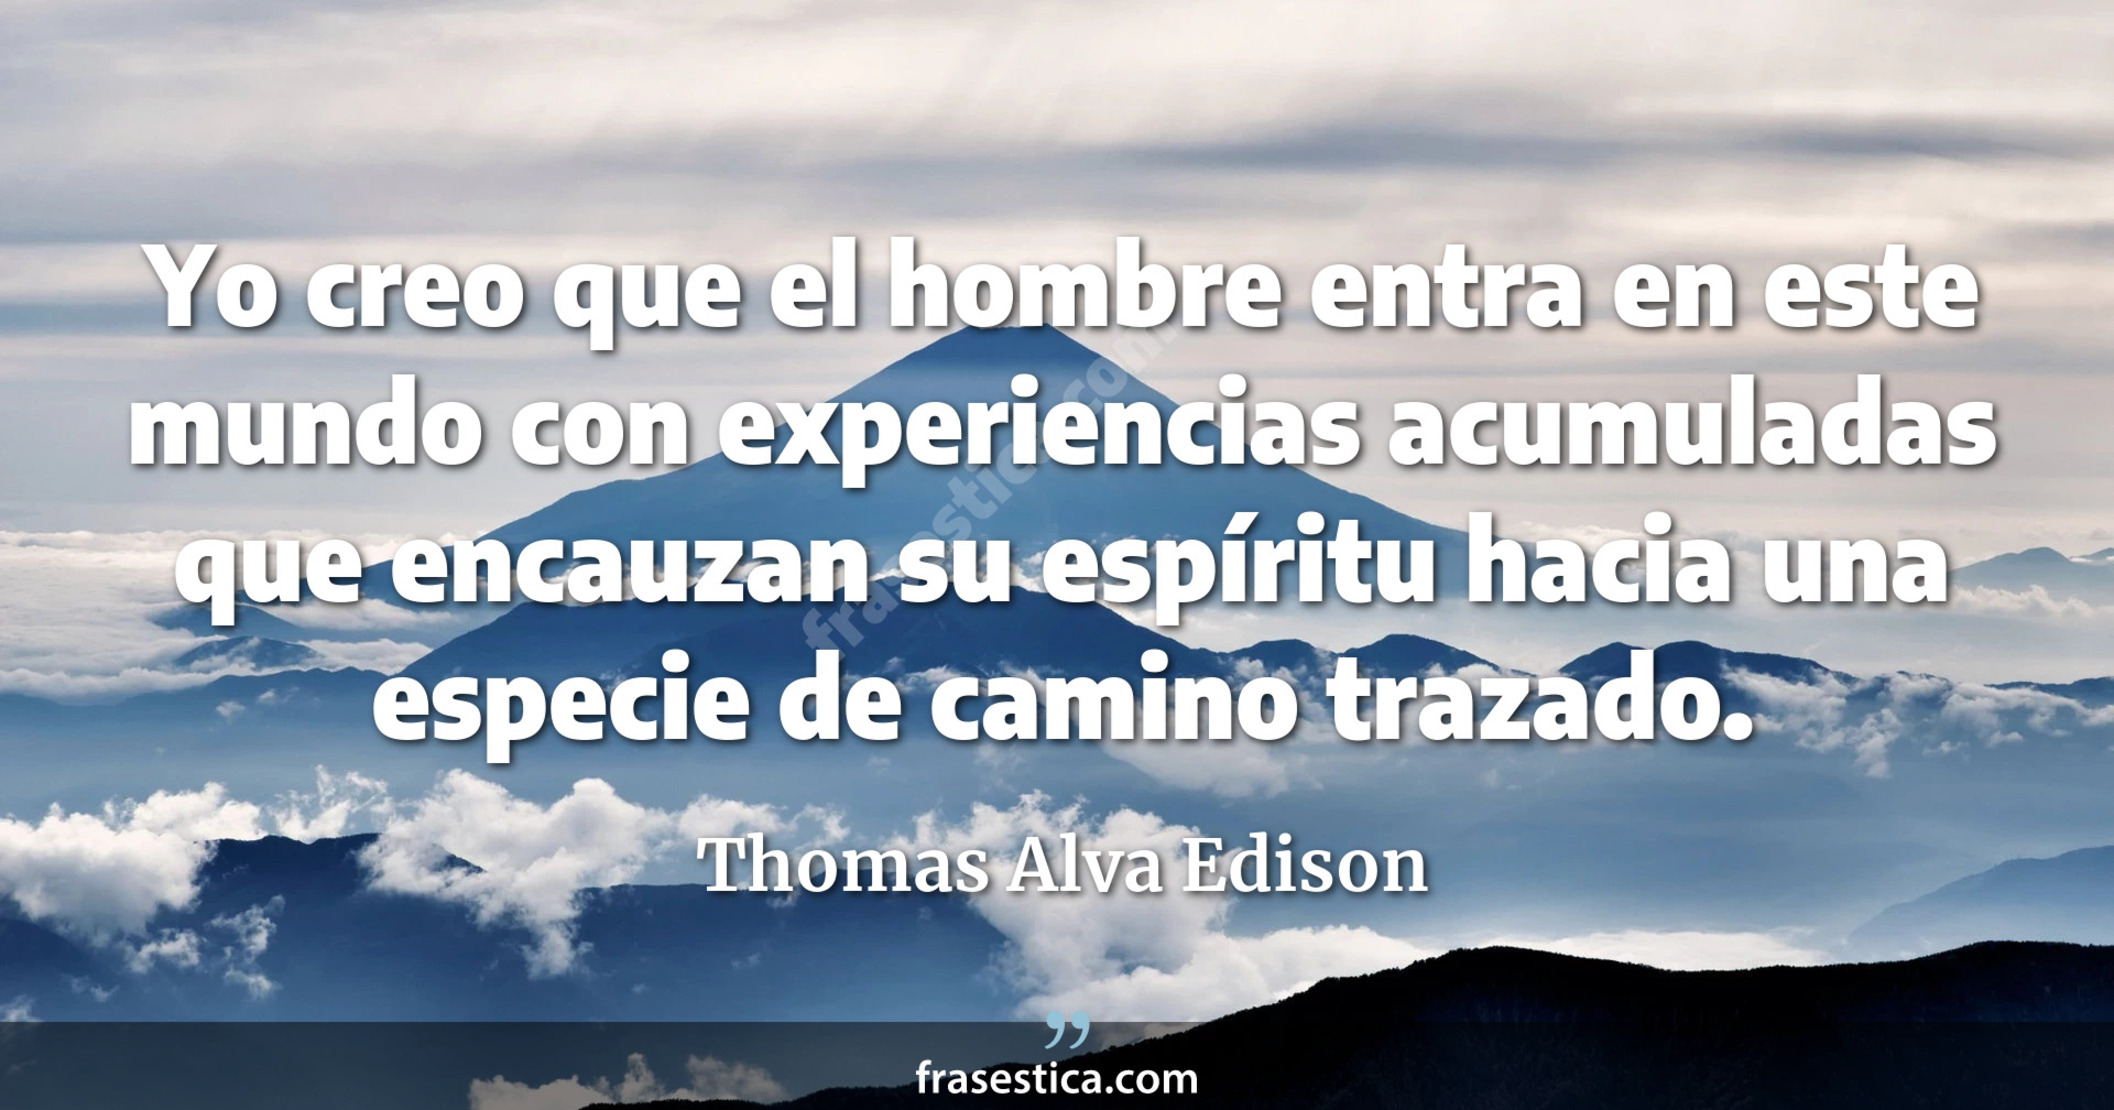 Yo creo que el hombre entra en este mundo con experiencias acumuladas que encauzan su espíritu hacia una especie de camino trazado. - Thomas Alva Edison